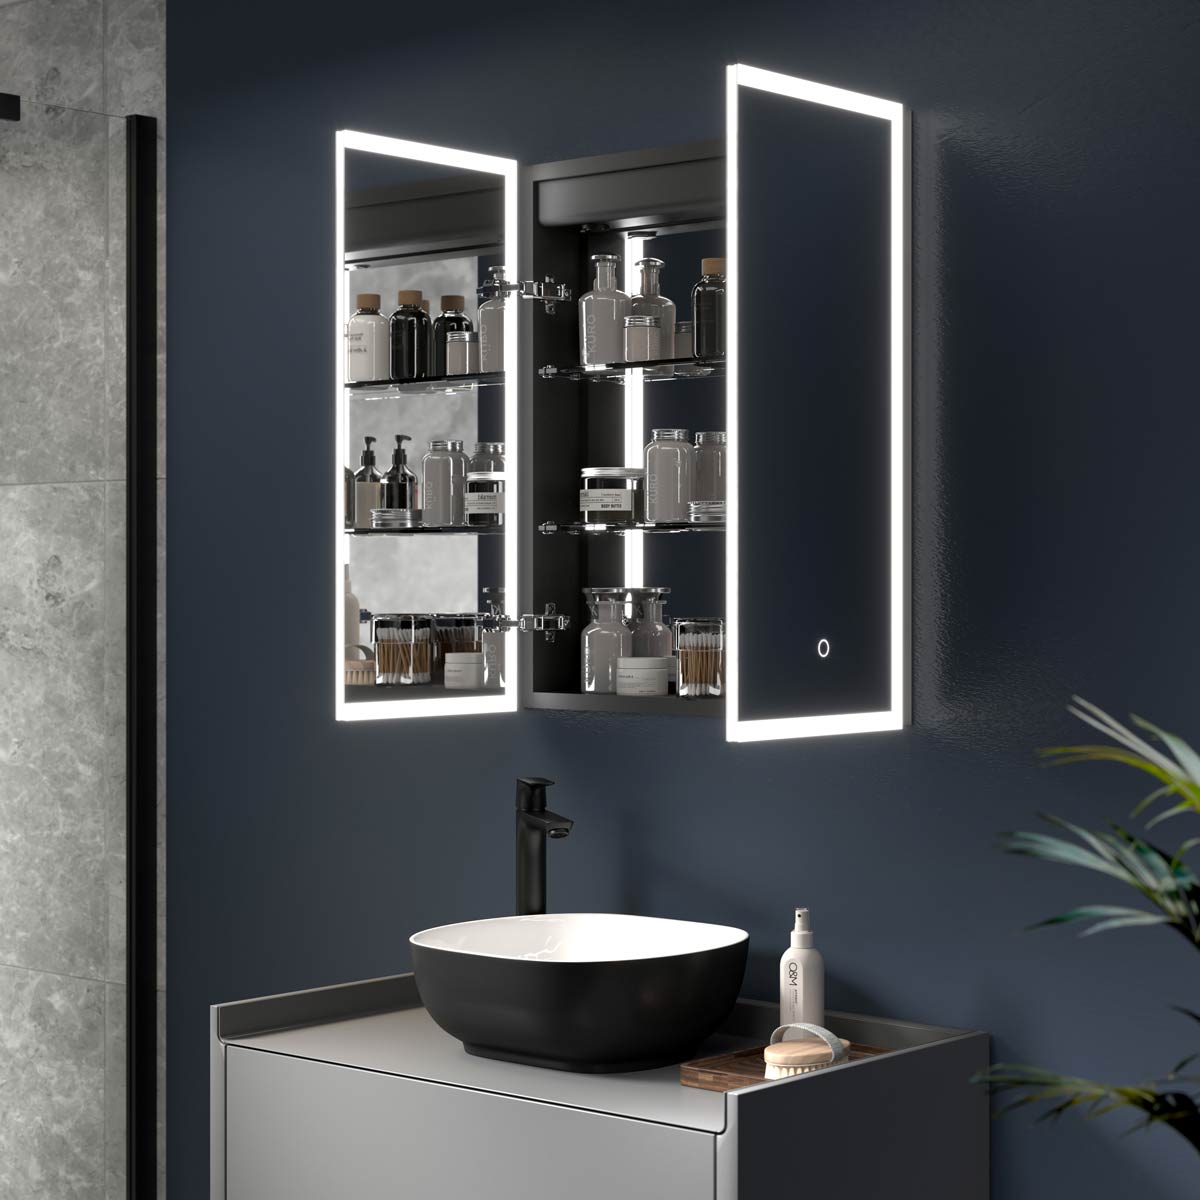 Bathroom Cabinet with Mirror | Mirrored Bathroom Cabinet | Pebble Grey ...